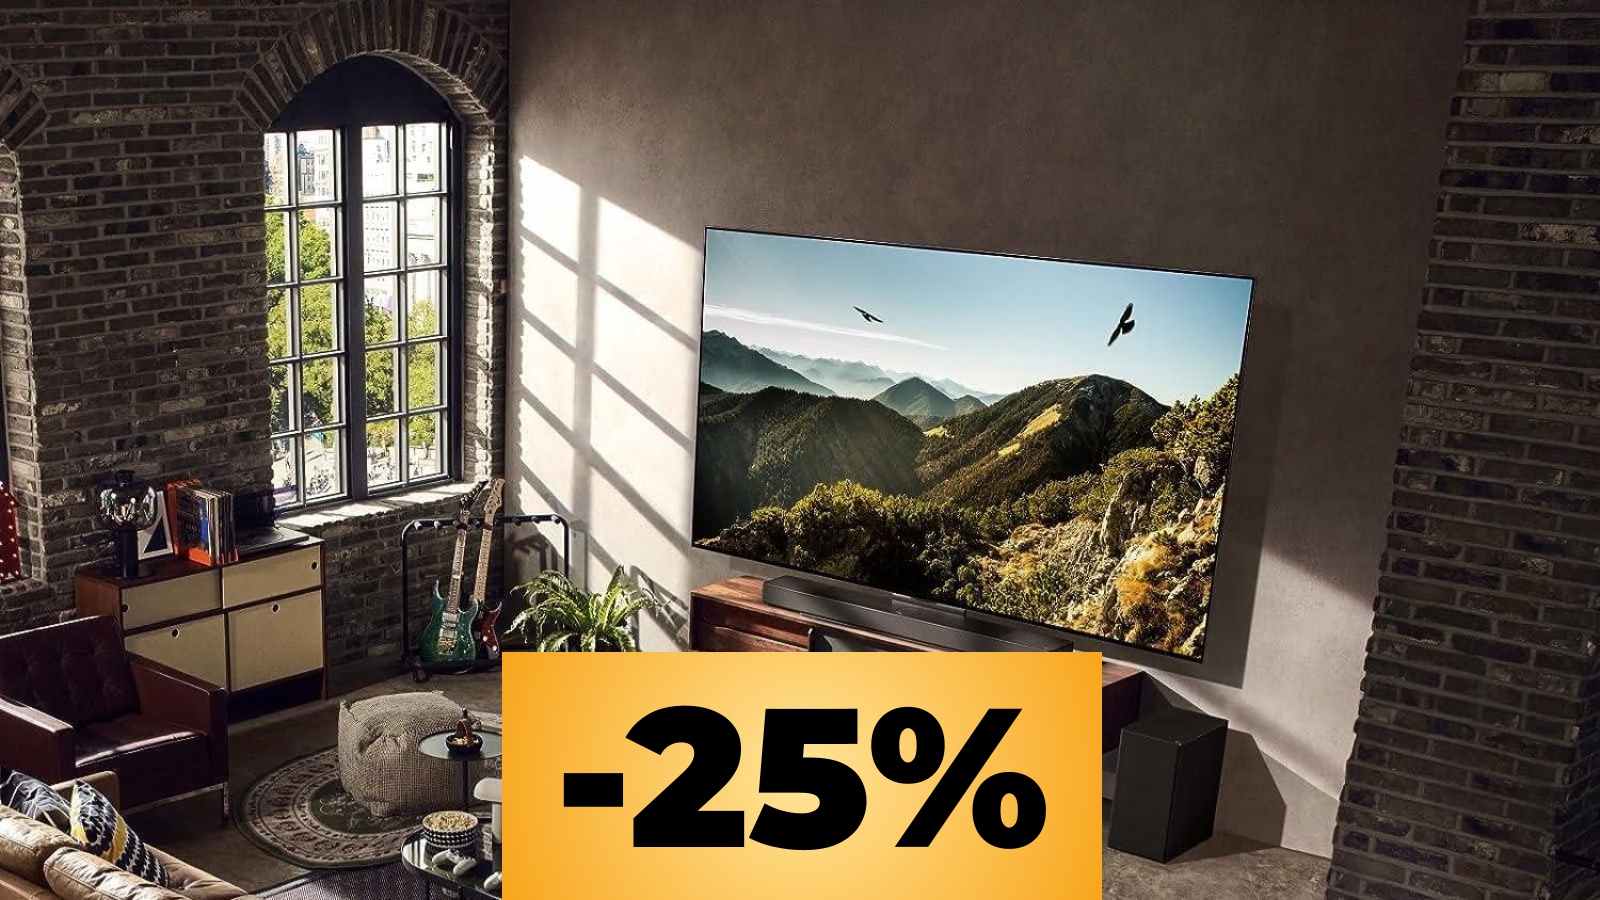 LG OLED evo è al prezzo minimo: l'offerta Amazon per la TV perfetta per giocare in 4K/120 FPS